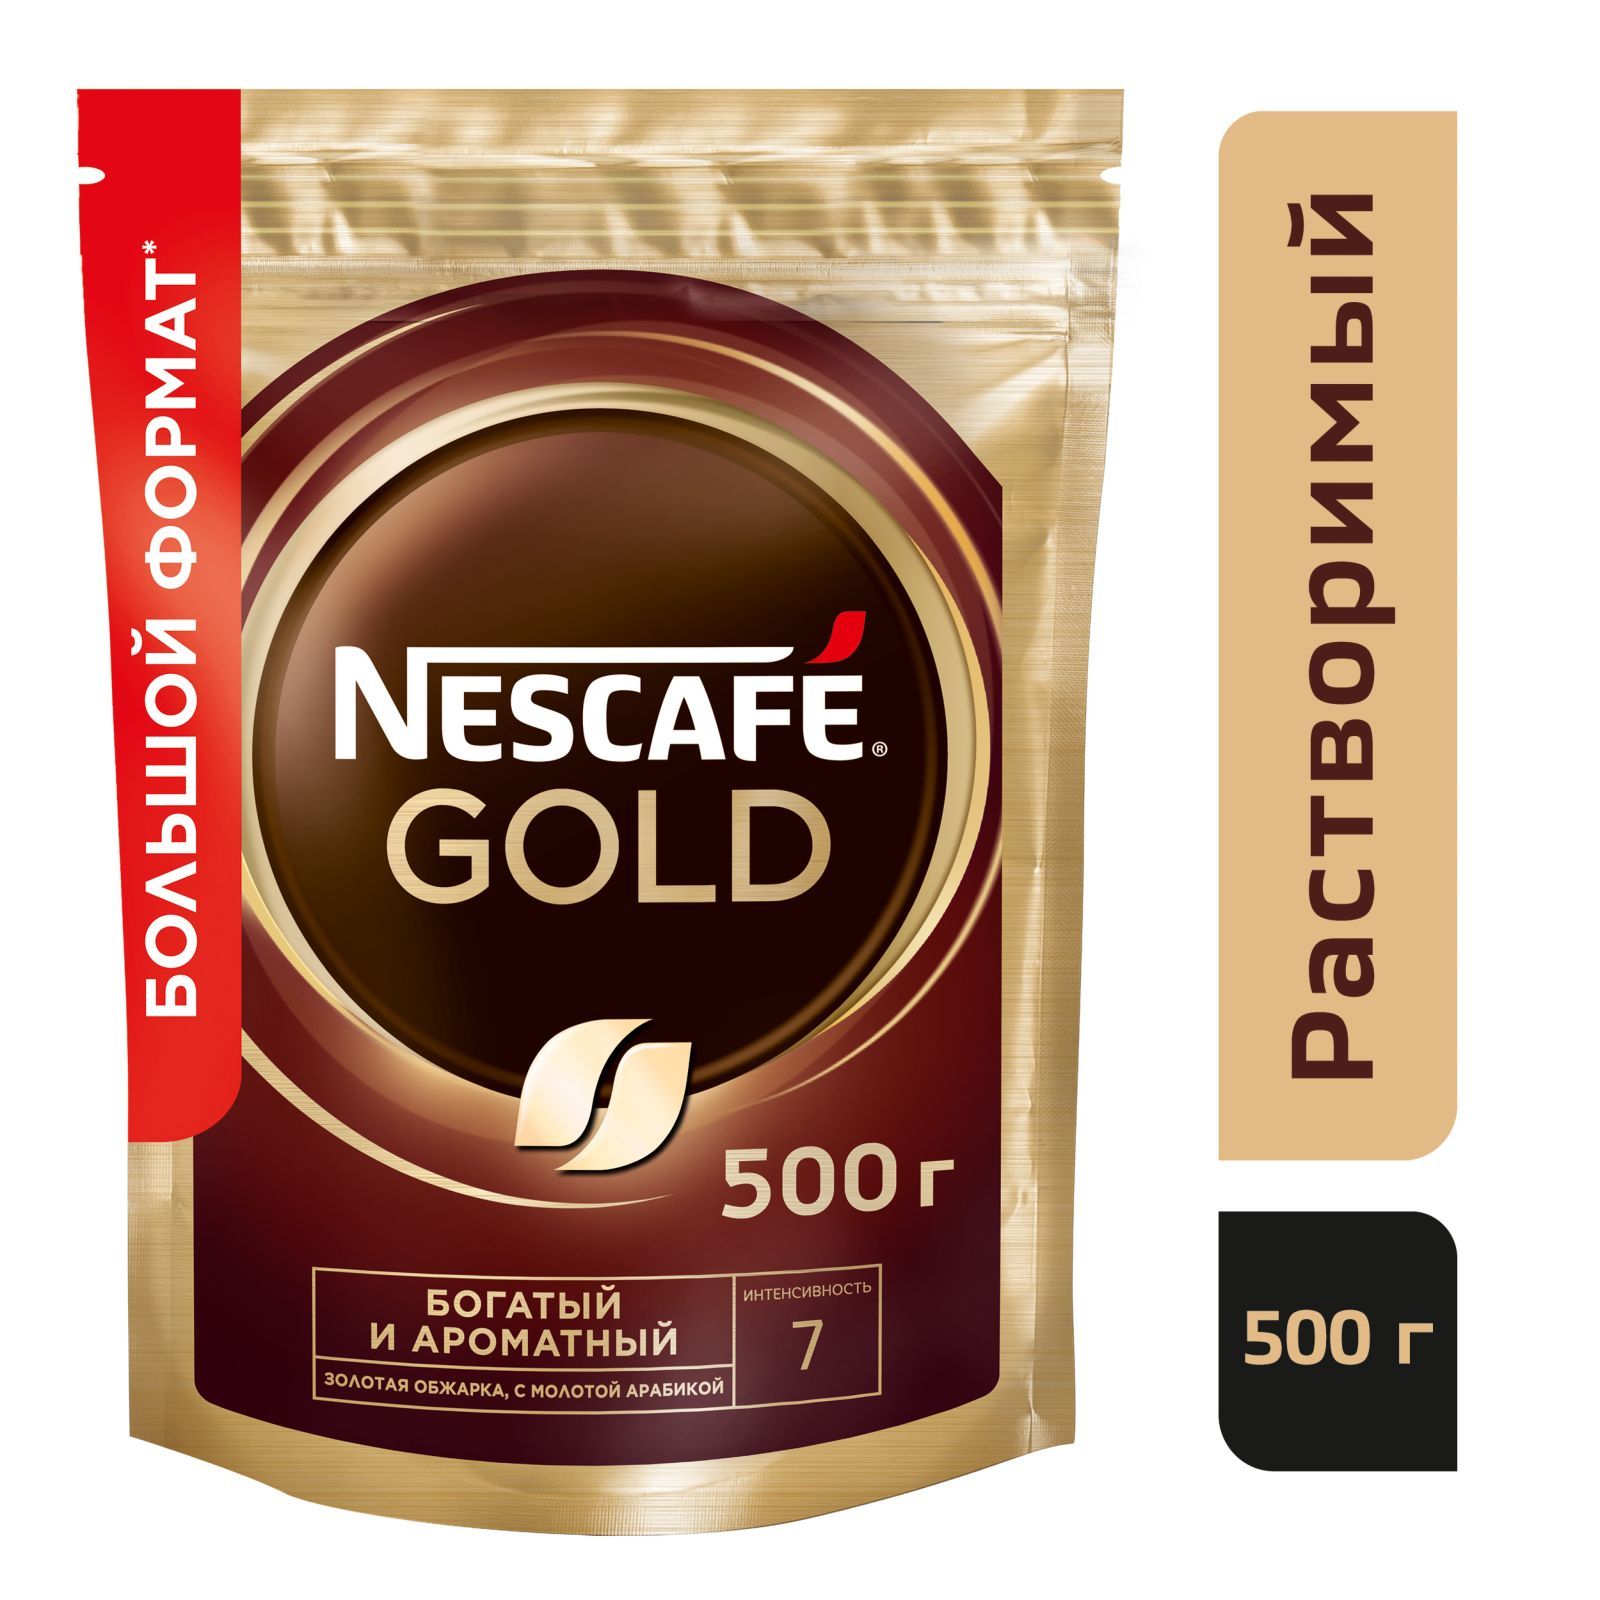 Nescafe gold растворимый 900. Нескафе Голд 900 гр. Nescafe Gold 500 г. Кофе Нескафе Голд 190. Nescafe Gold натуральный сублимированный, 500г.